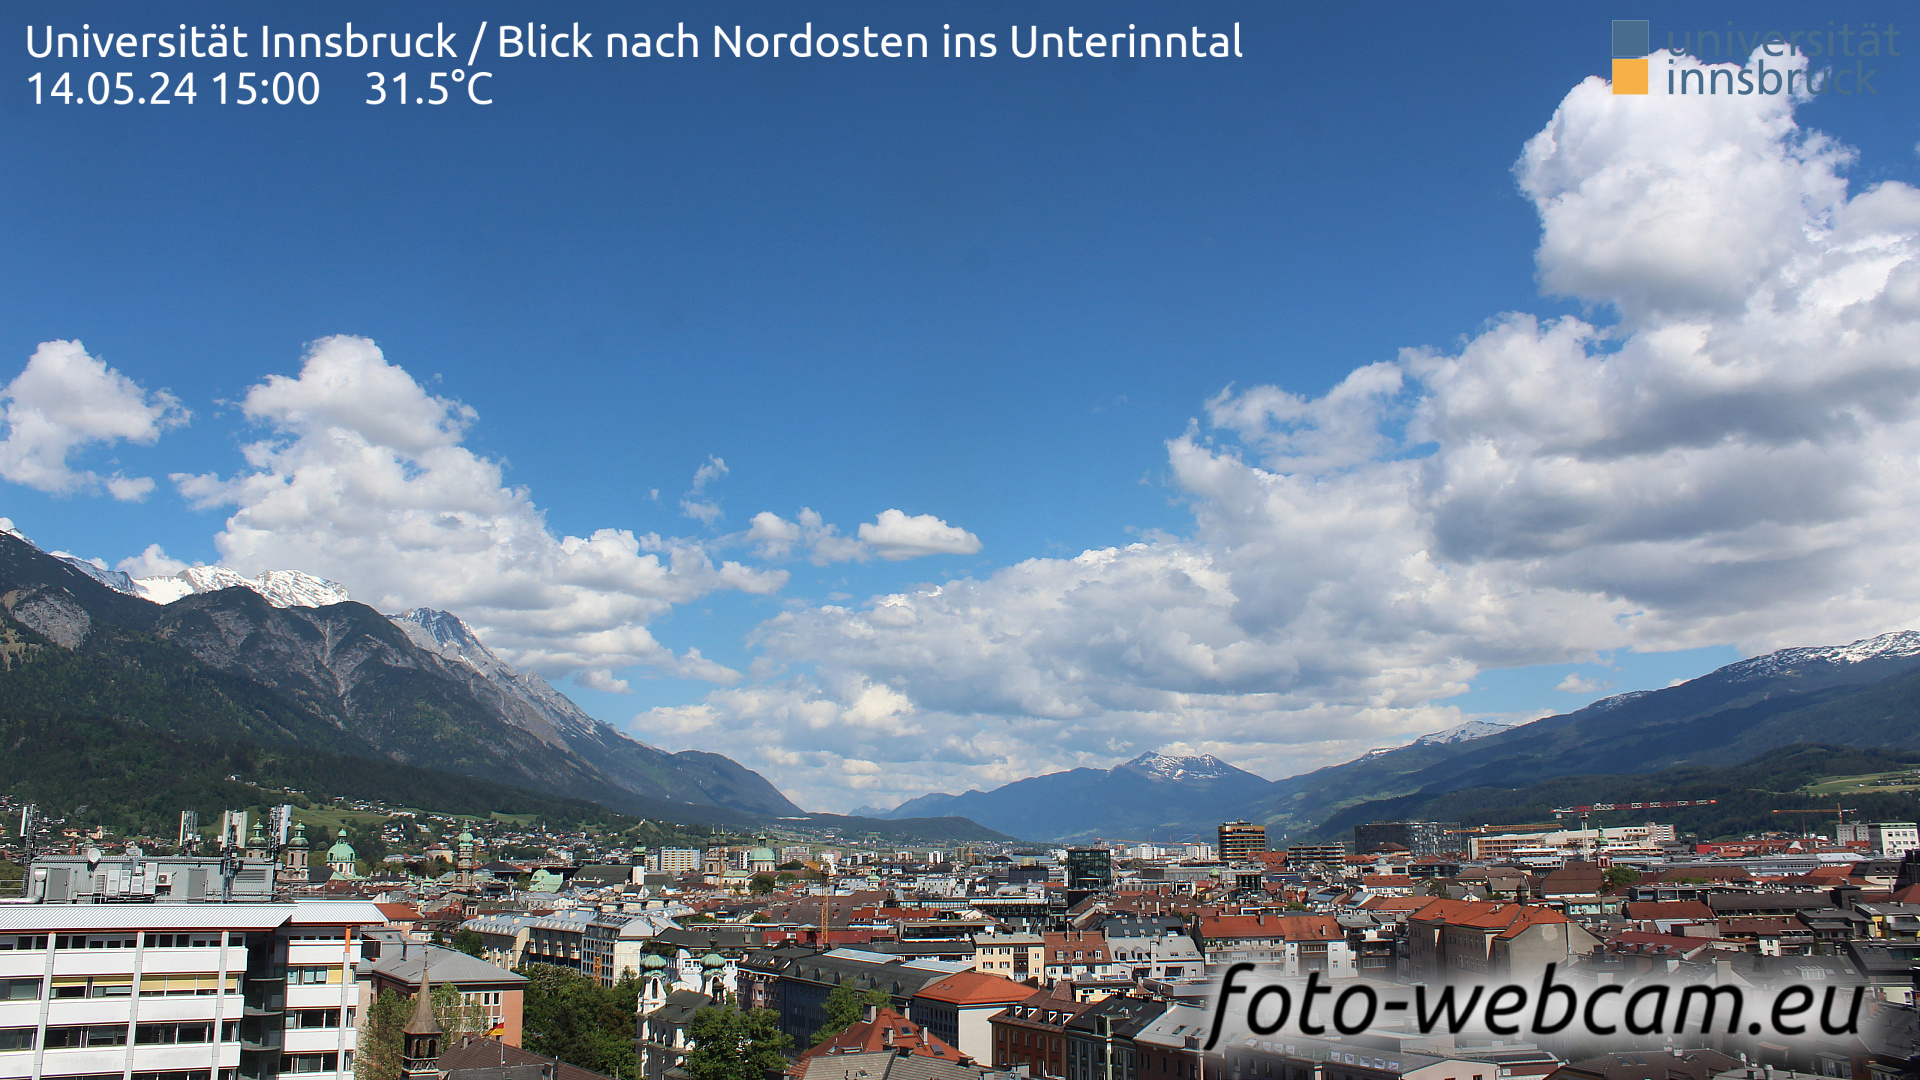 Innsbruck Thu. 15:06